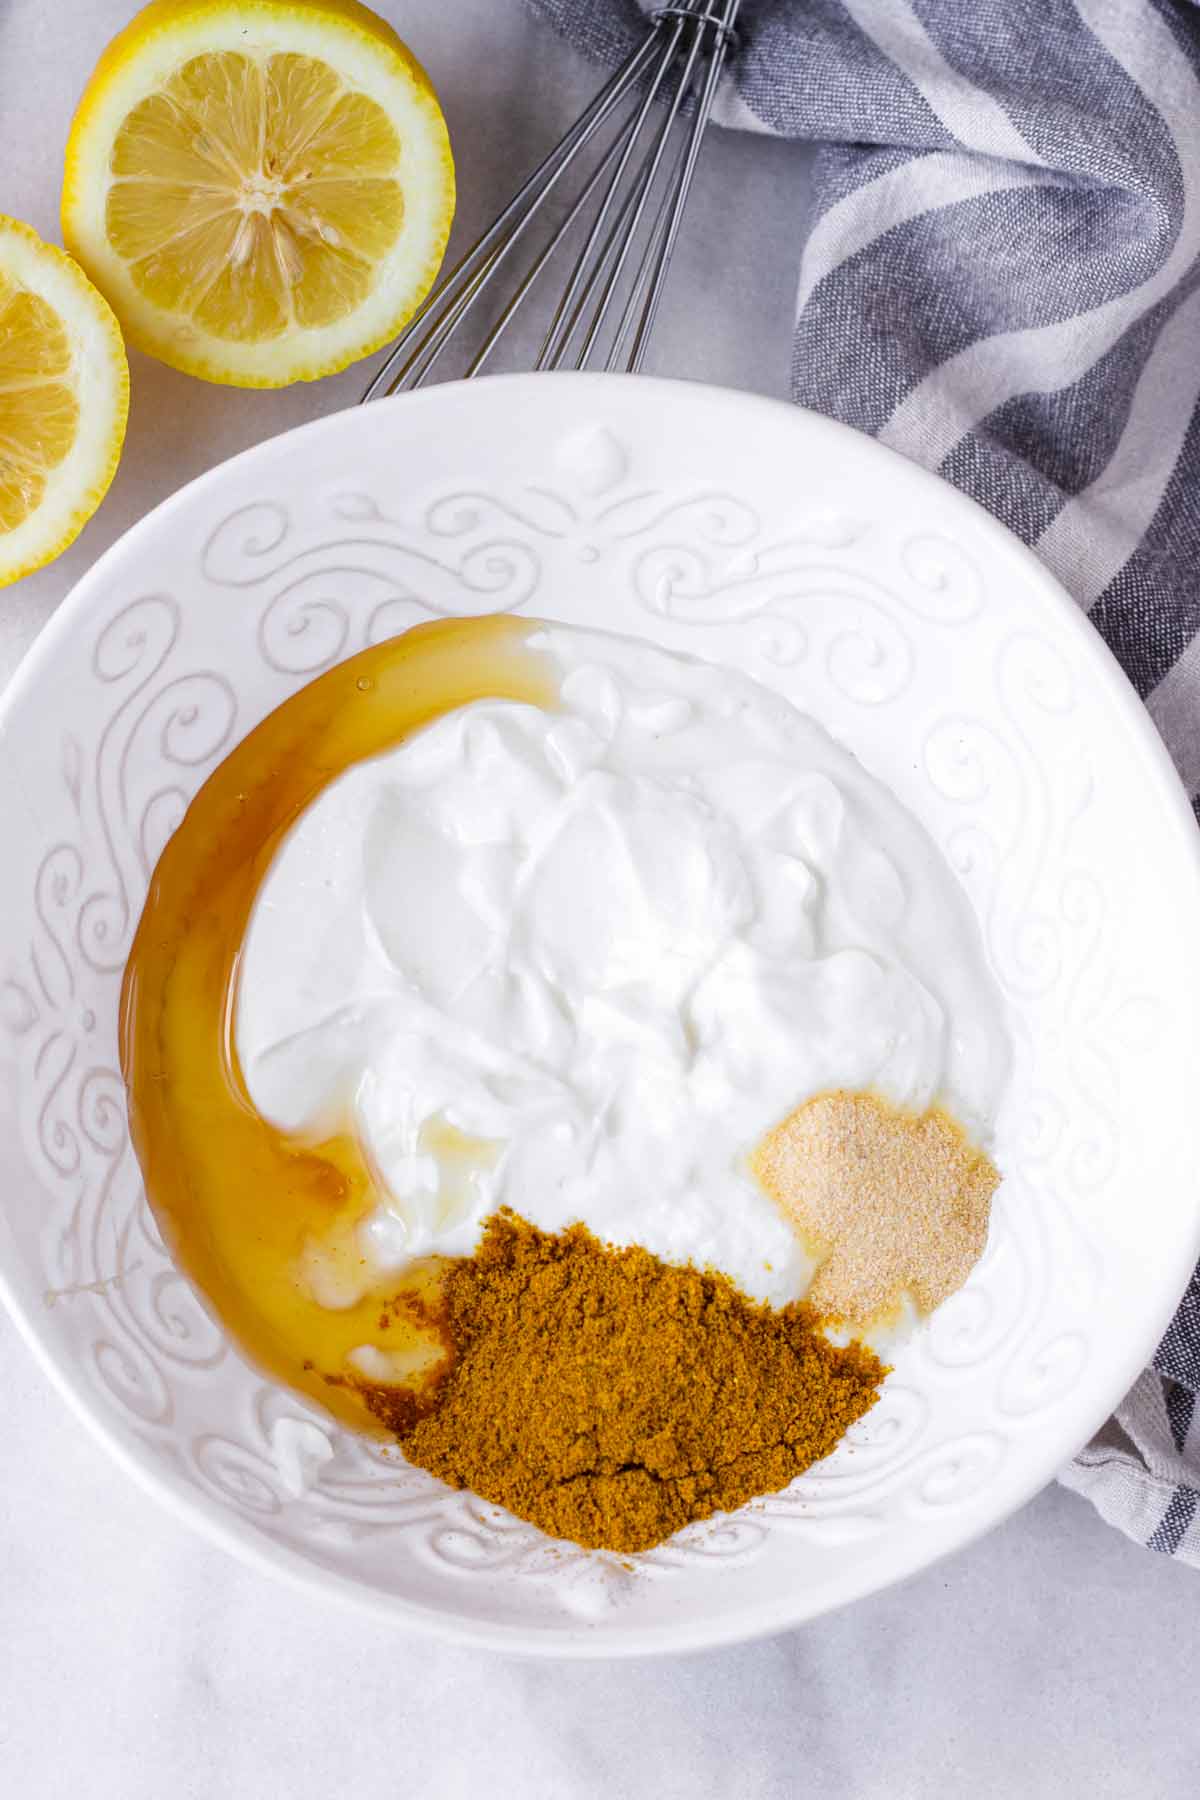 honey, curry powder, yogurt, garlic powder in a bowl and a sliced lemon